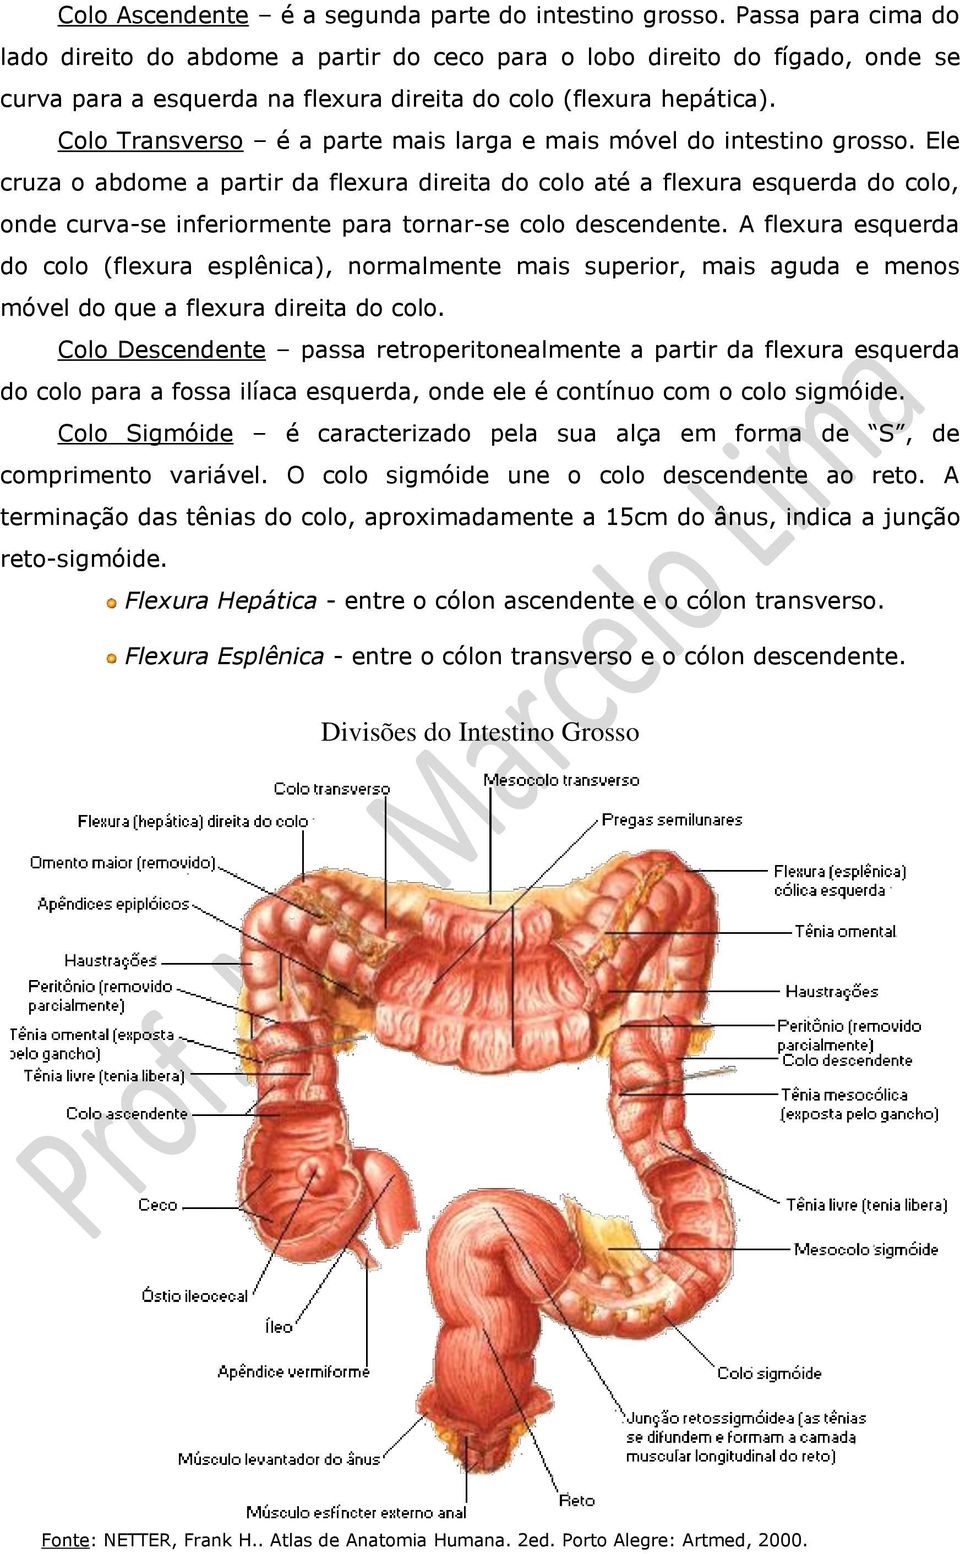 Colo Transverso é a parte mais larga e mais móvel do intestino grosso.